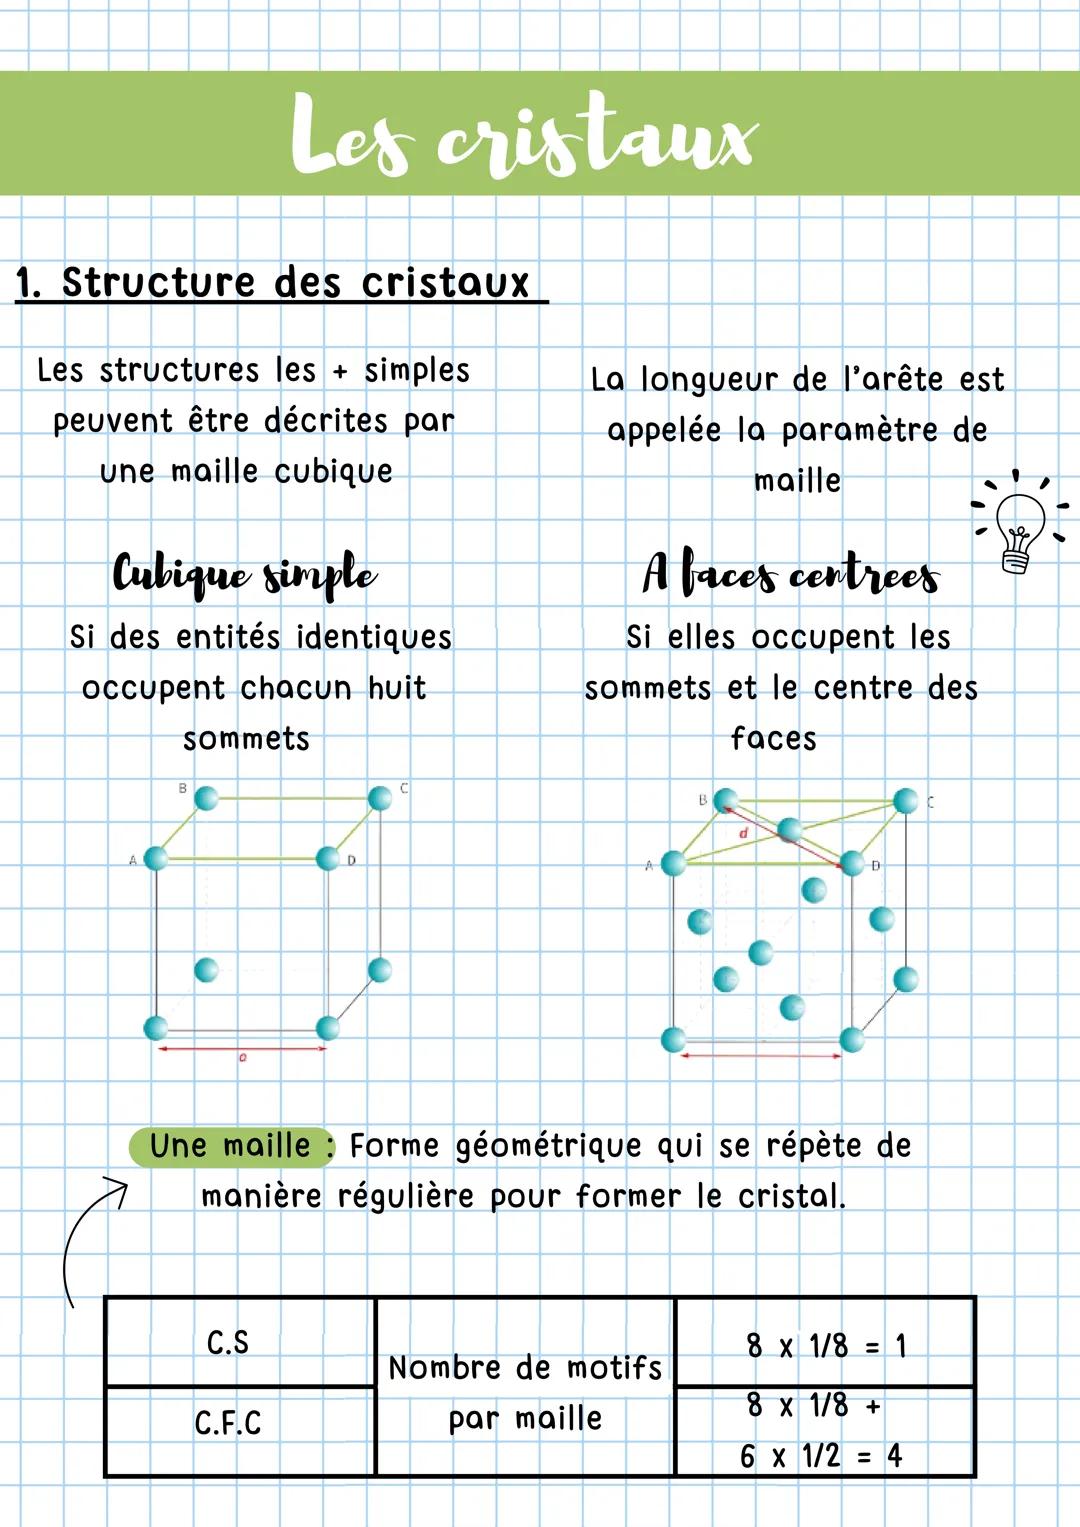 1. Structure des cristaux
Les structures les + simples
peuvent être décrites par
une maille cubique
Cubique simple
Si des entités identiques